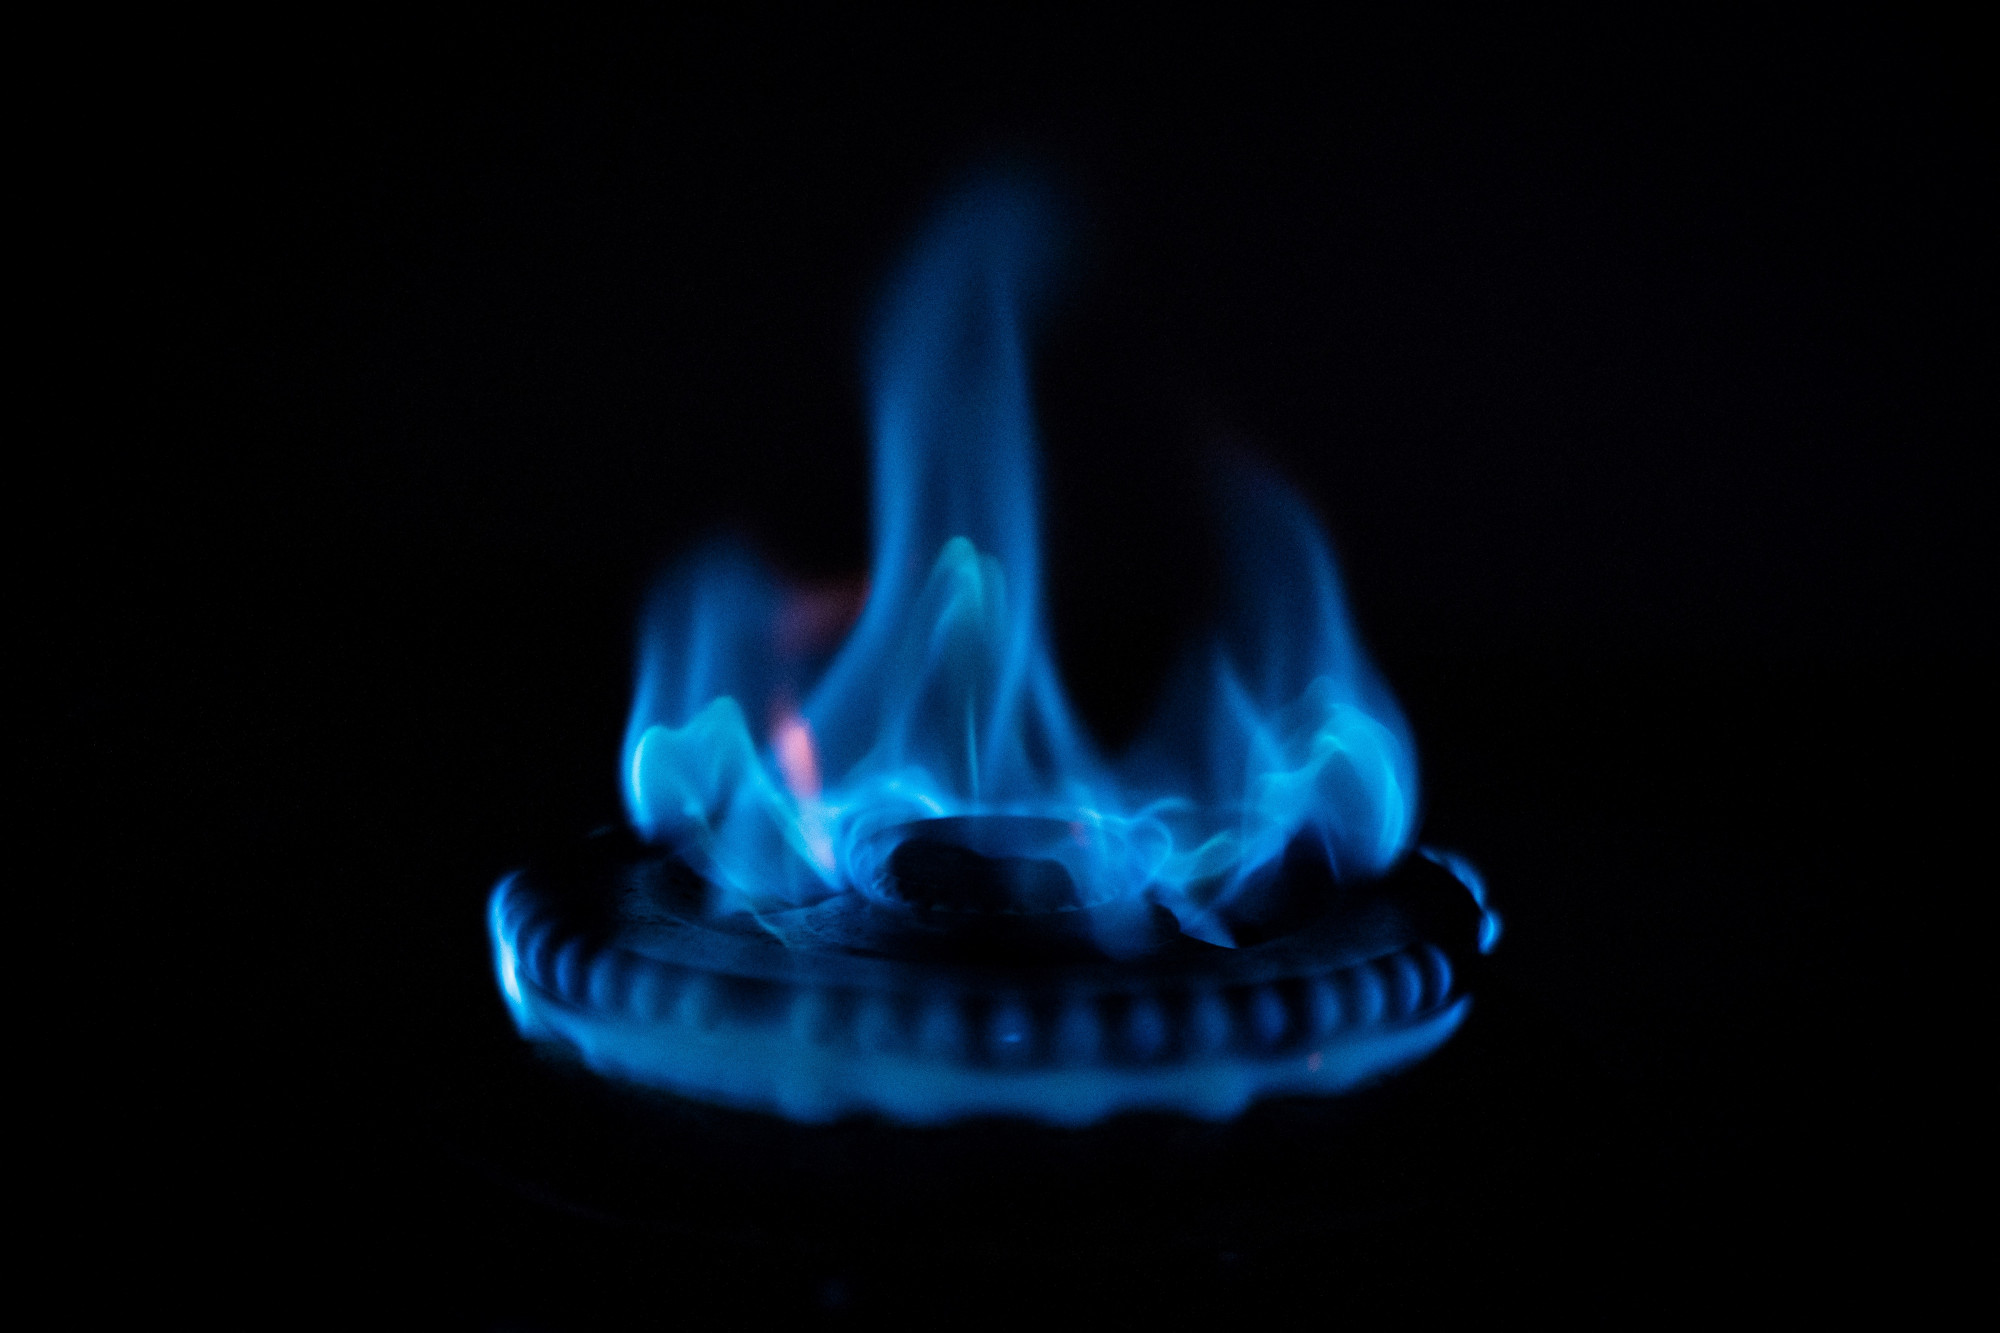 Az önkormányzati cégek mentesülhetnek a fel nem használt földgázért fizetendő kötbér alól